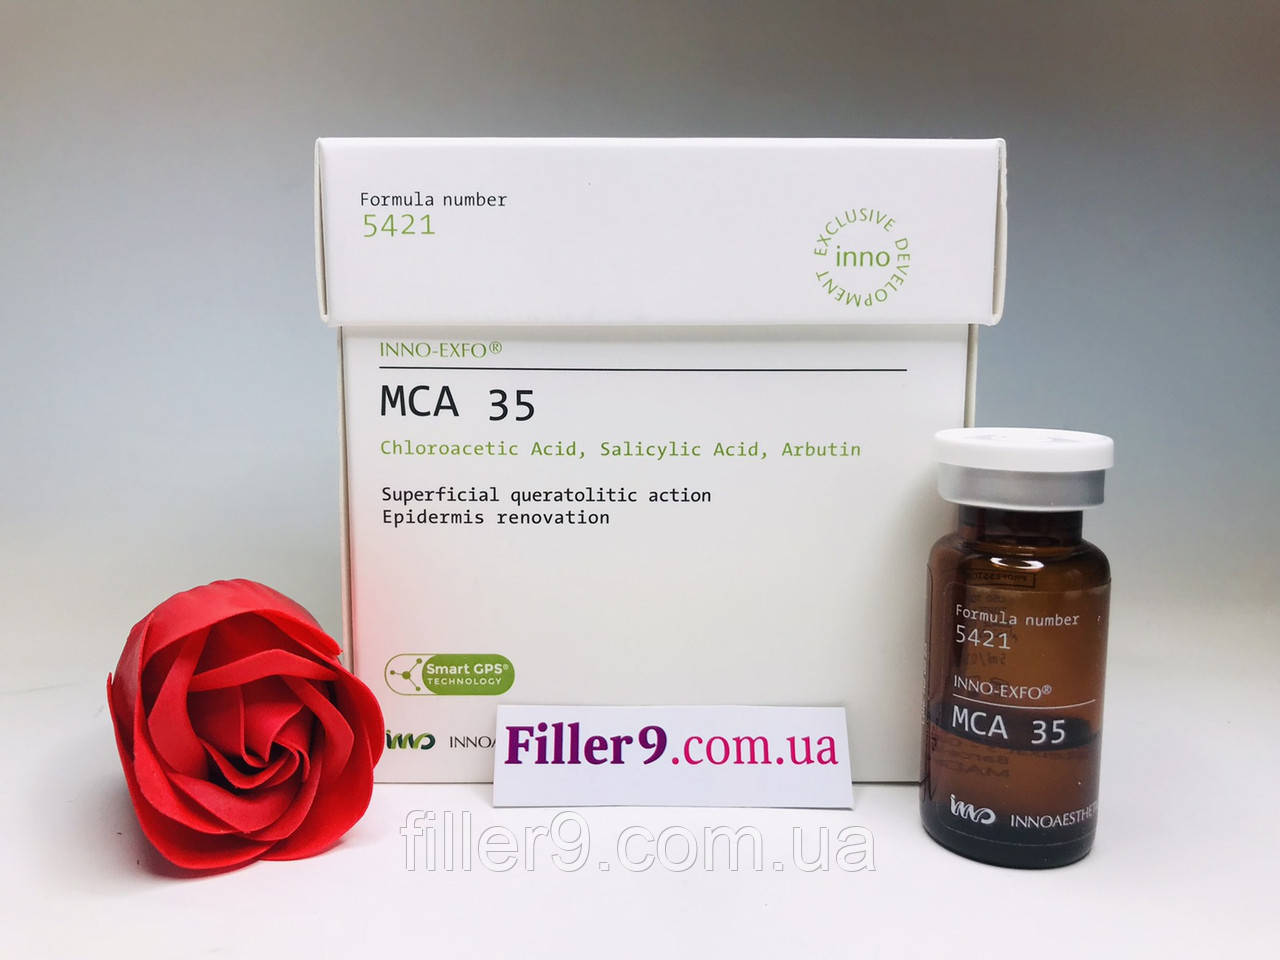 Innoaesthetics MCA 35 (МСА 35) Біоревіталізувальний пілінг для корекції вікових змін шкіри, 5 мл